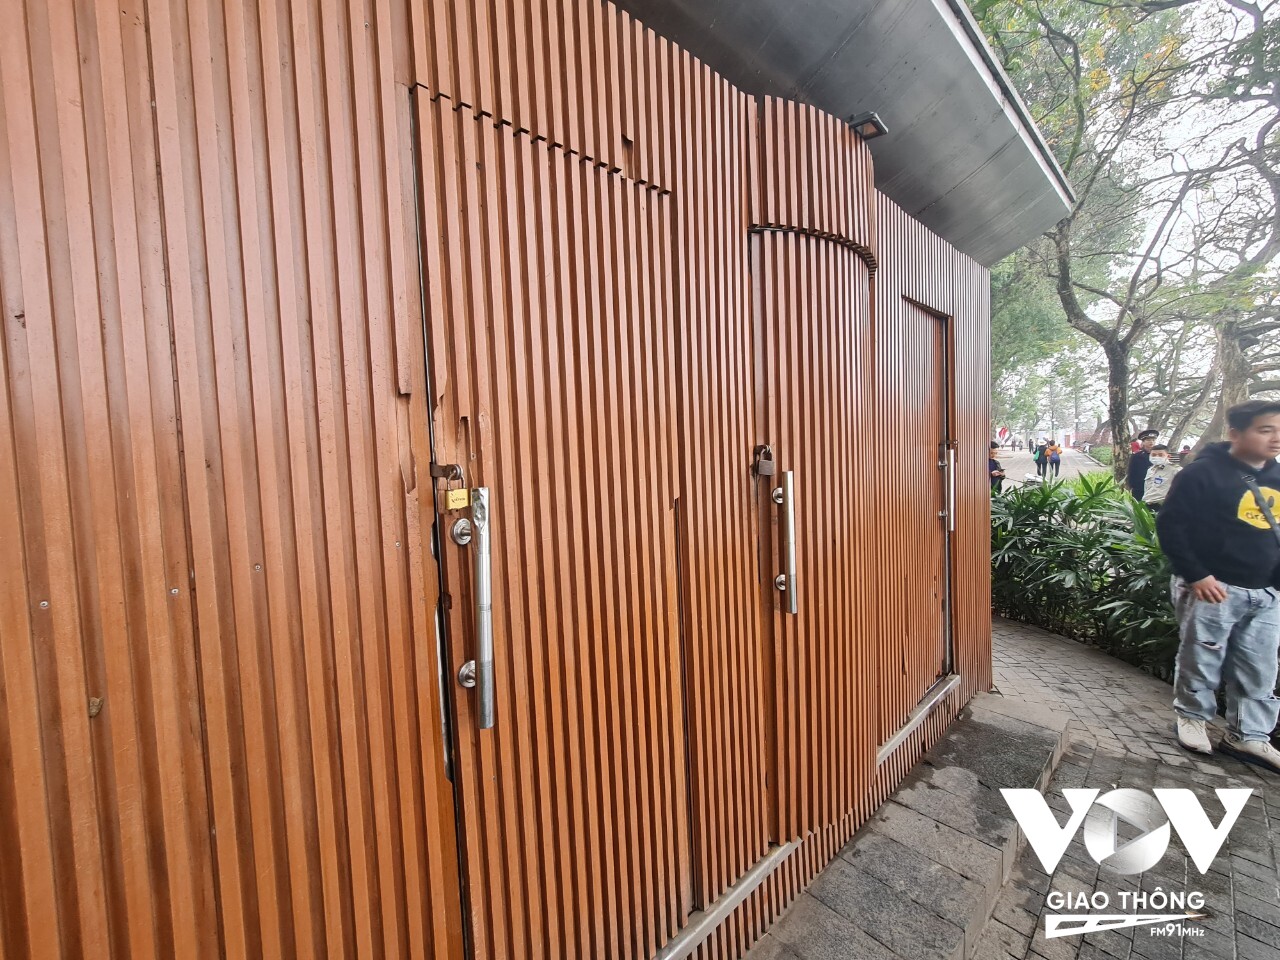 Nhà vệ sinh tại khu vực hồ Hoàn Kiếm 'khá khẩm' hơn đôi chút, nhưng 3 trên 4 cabin lại bị khóa, người dân không thể sử dụng